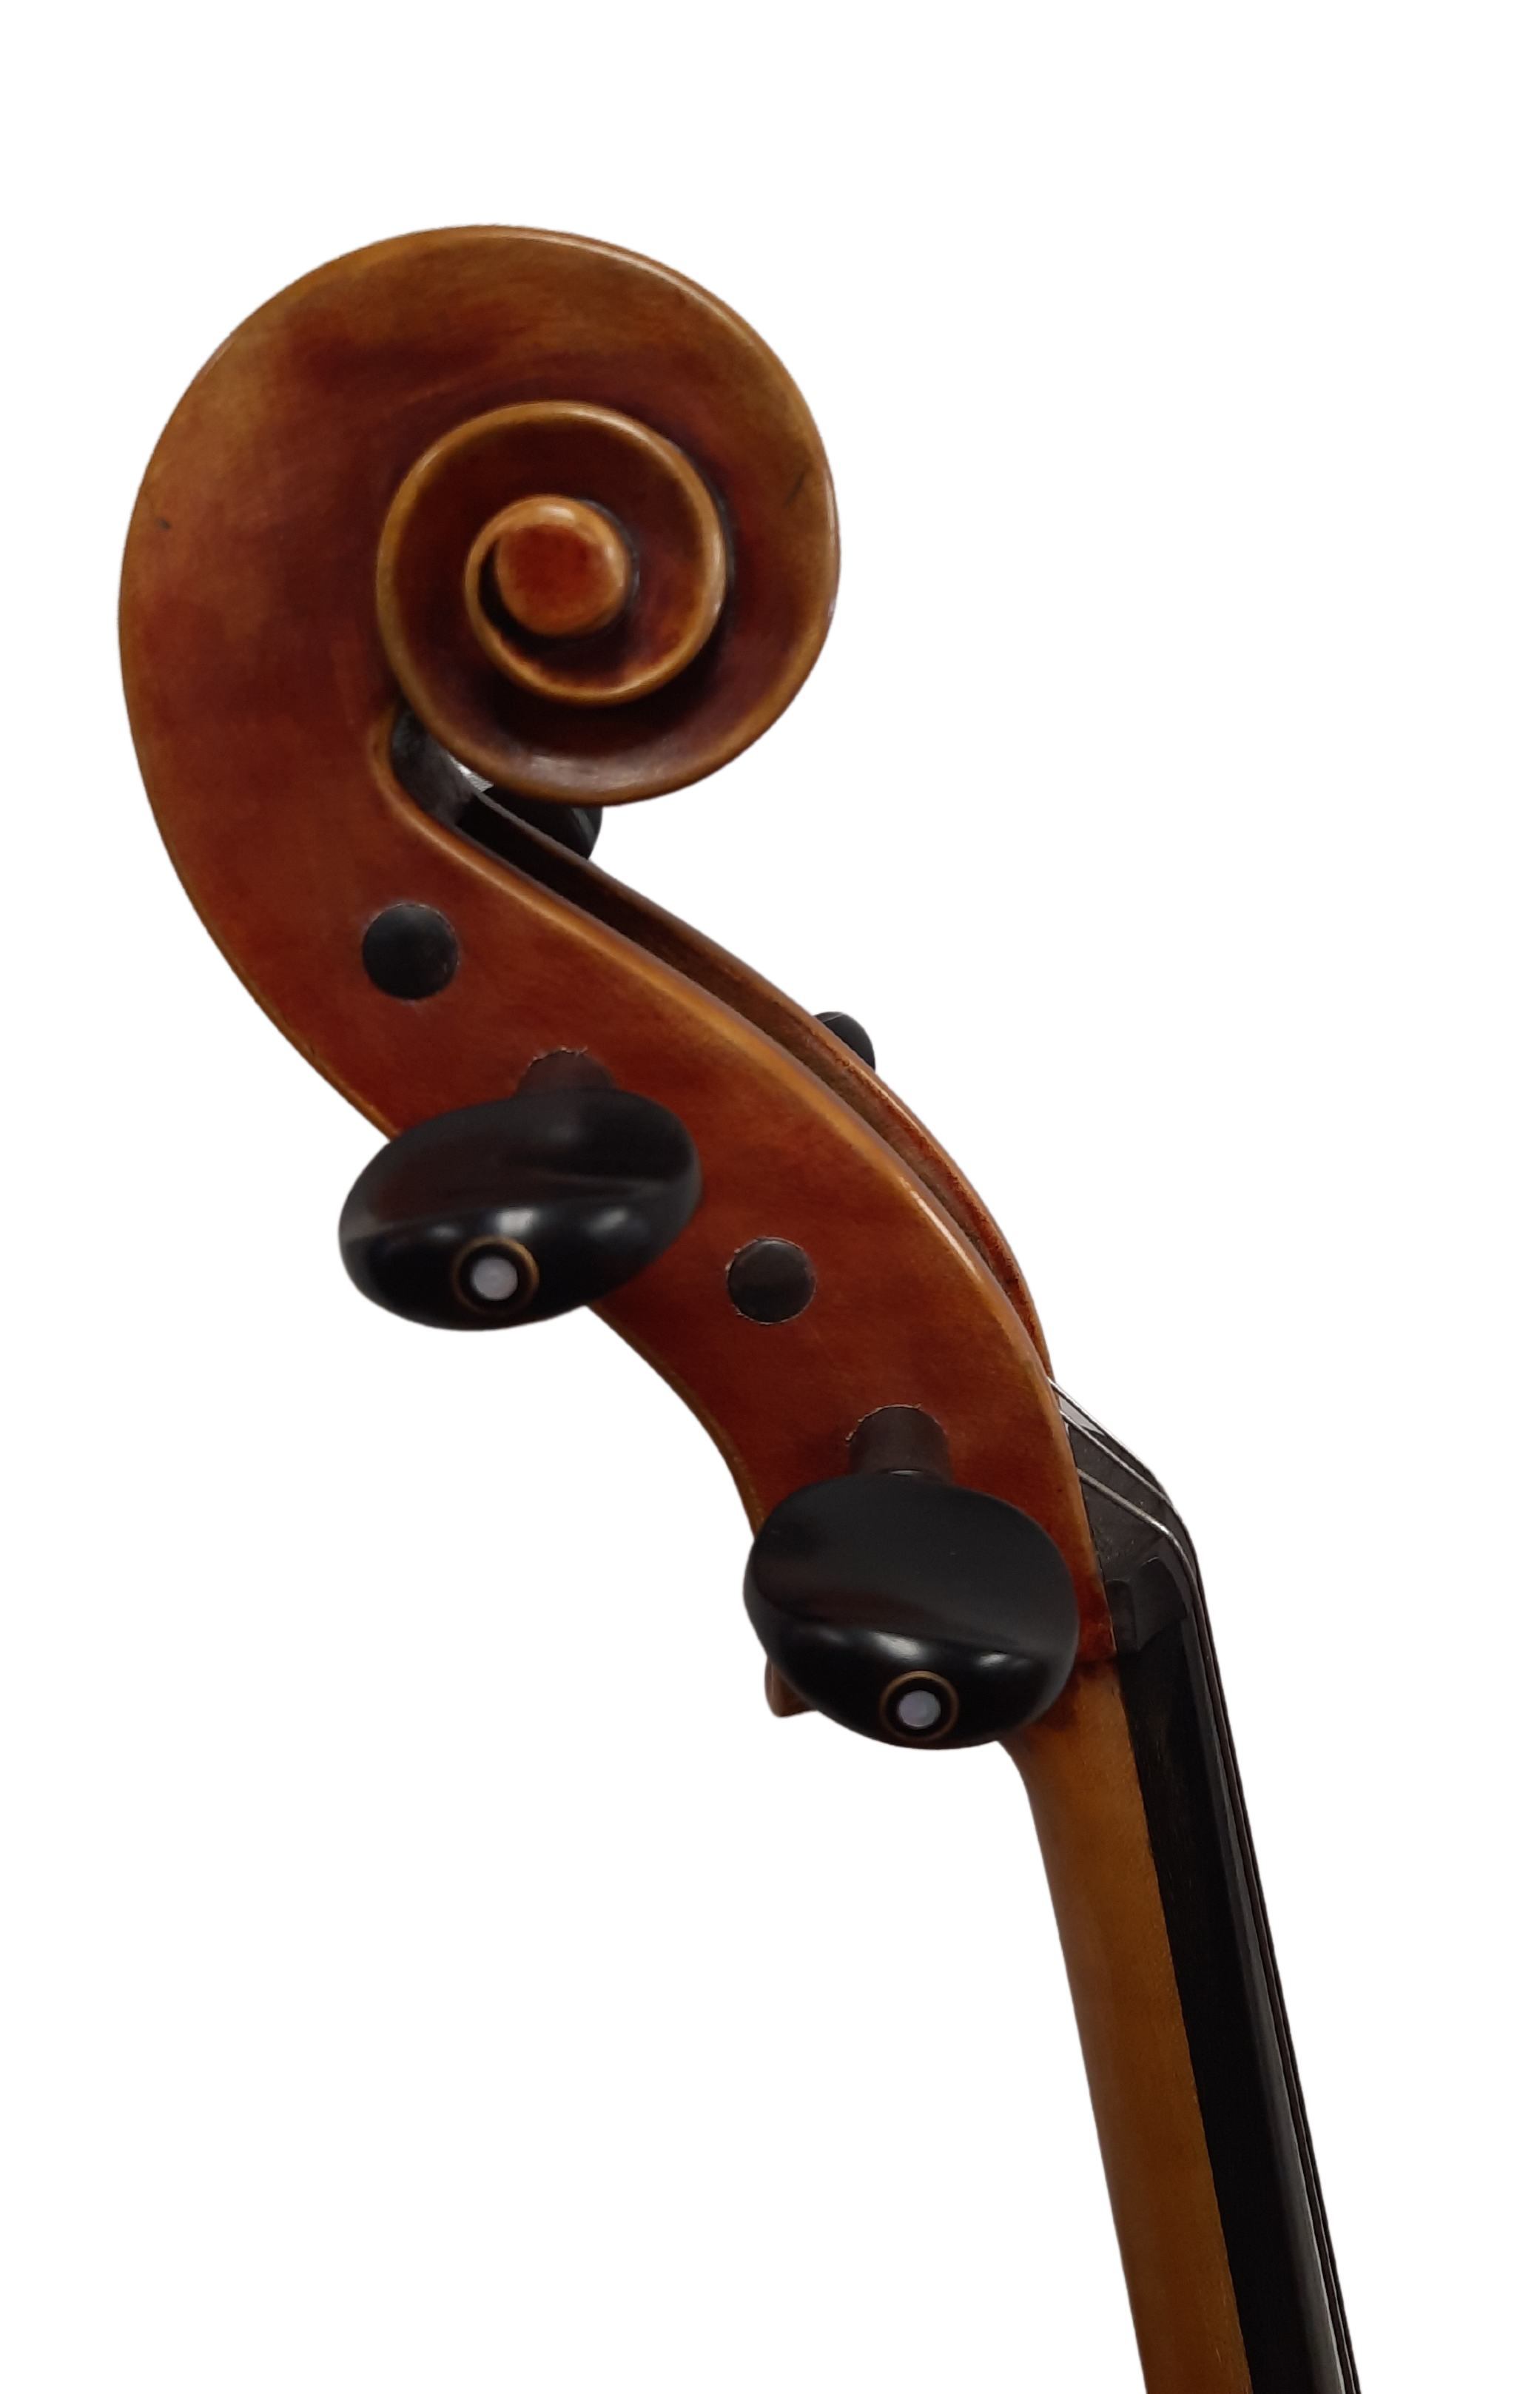 Nicolo Gabrieli Model 182F Cello